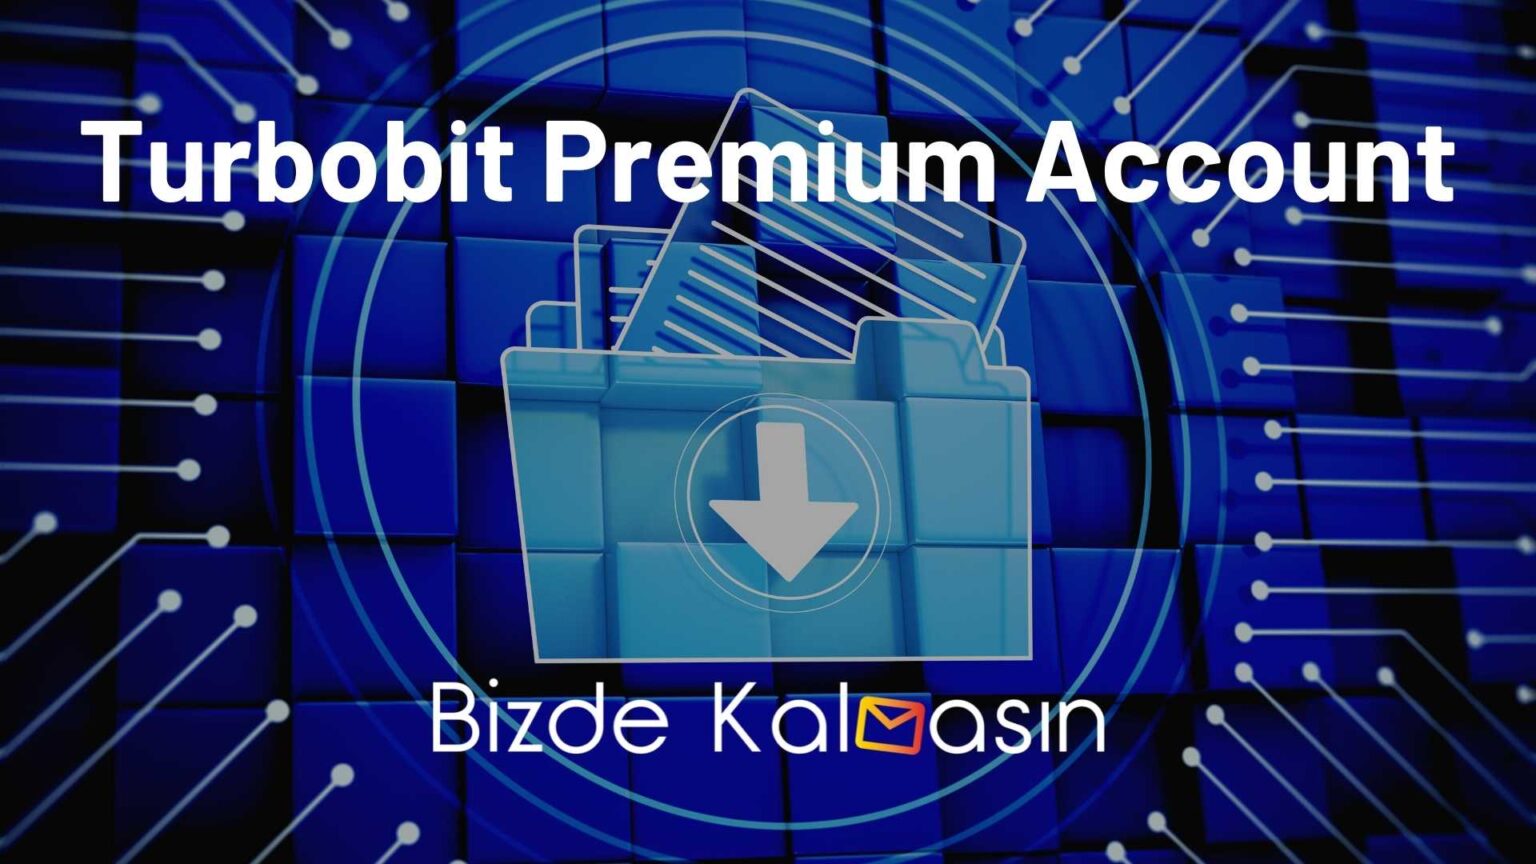 Bedava Turbobit Premium Hesap Ücretsiz Üyelik